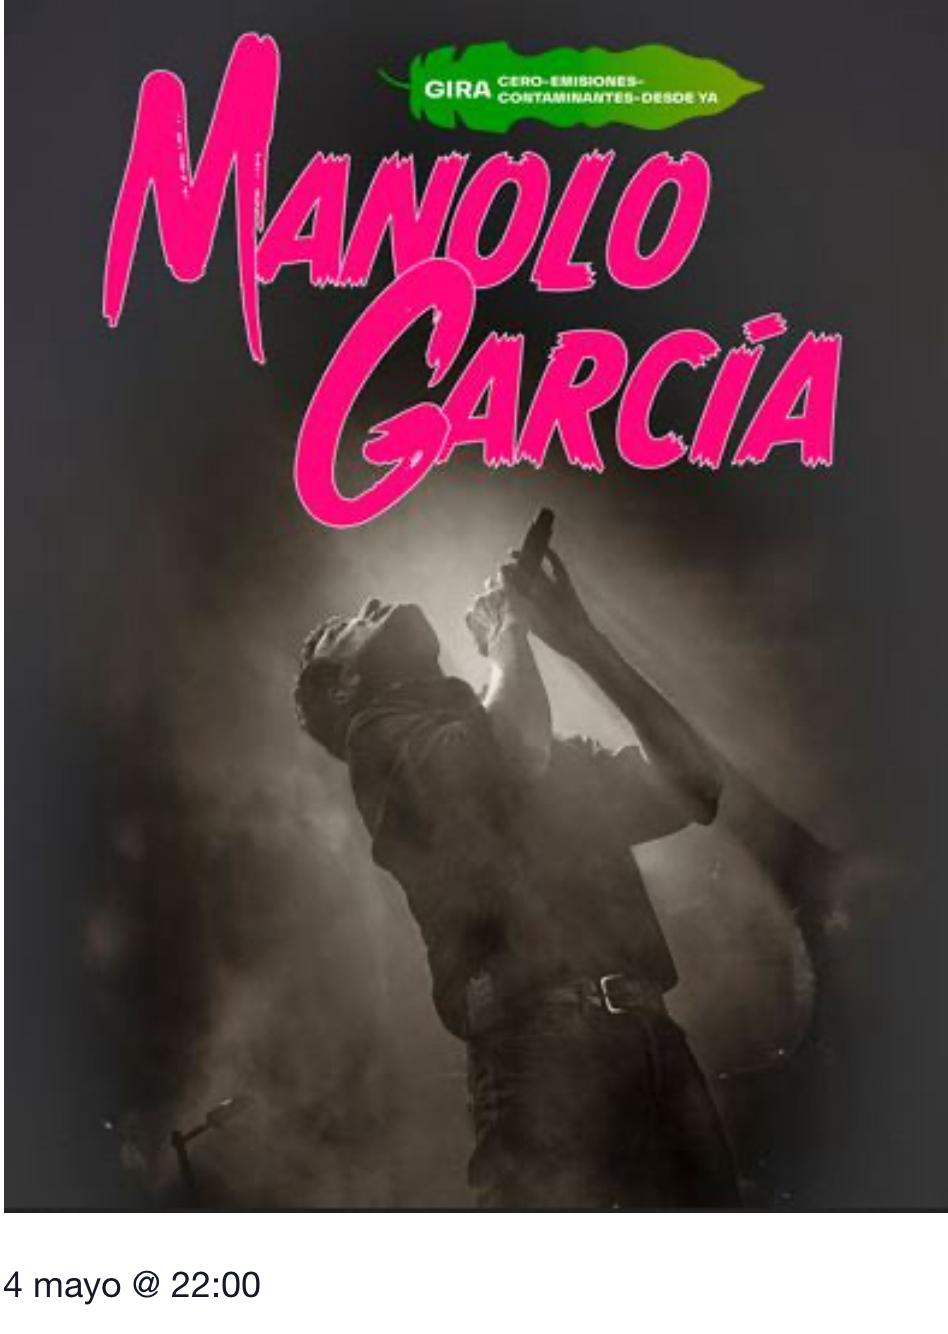 MUSICA - Manolo García